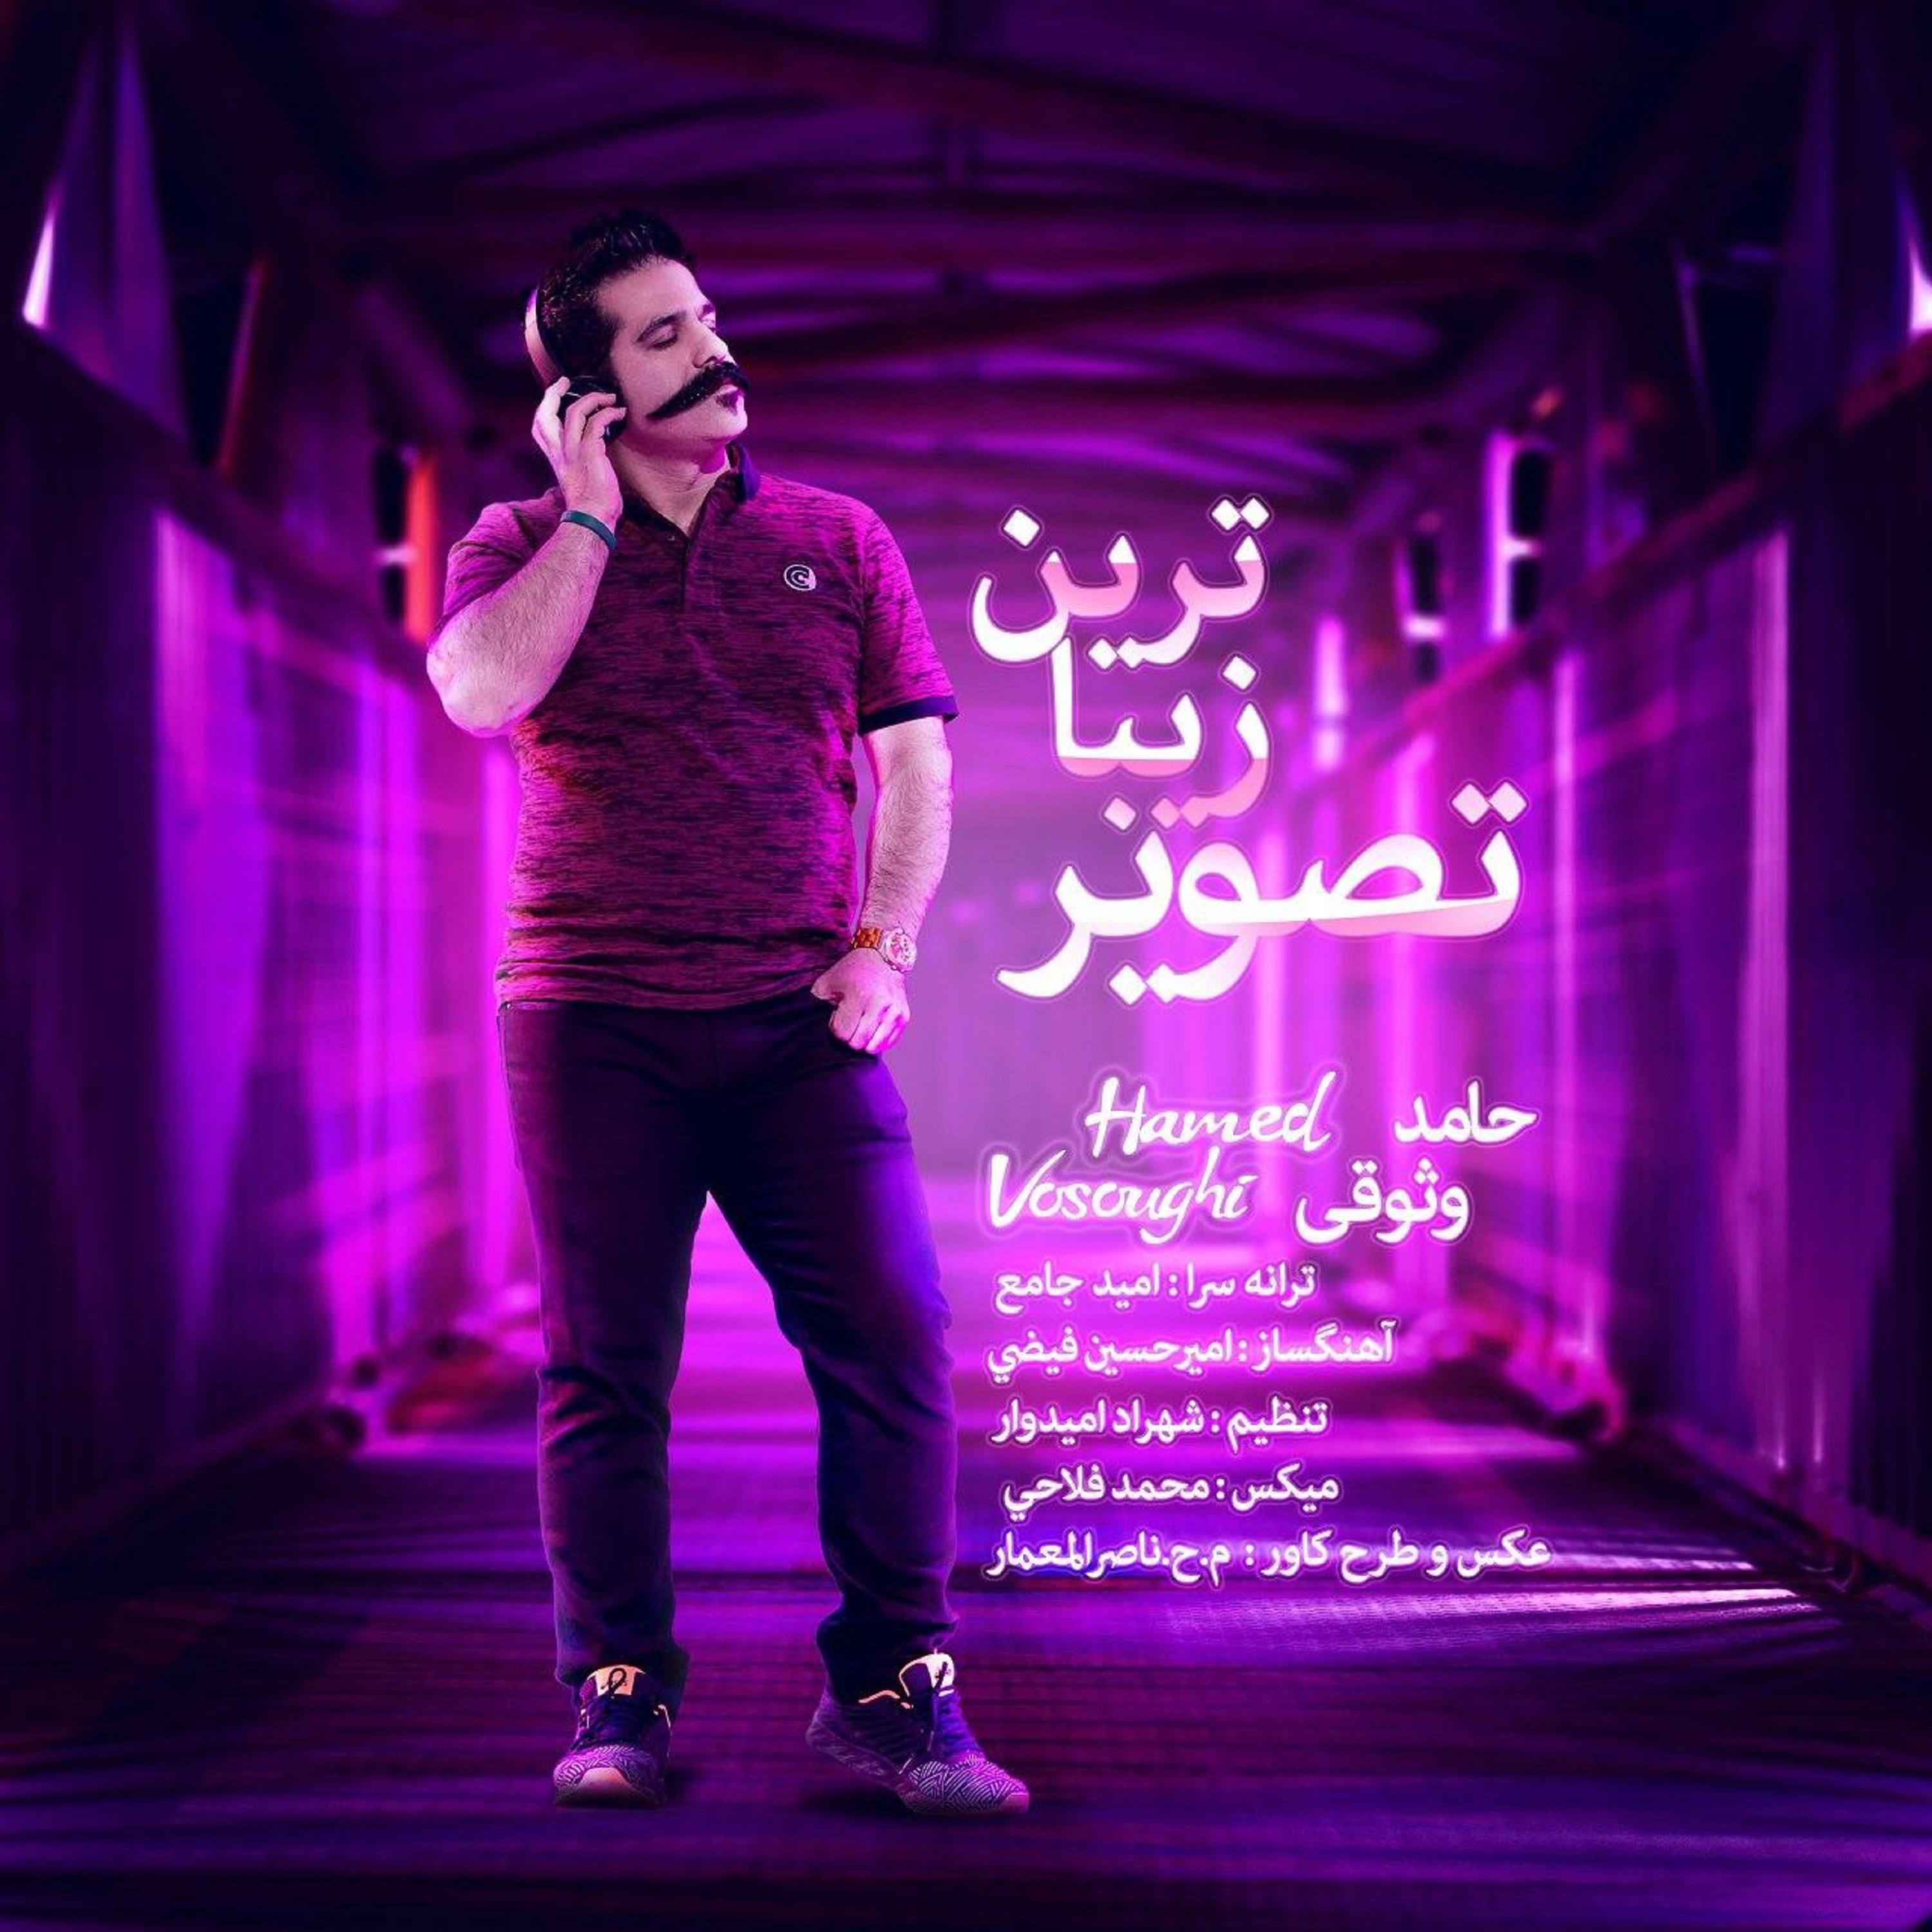  دانلود آهنگ جدید حامد وثوقی - زیباترین تصویر من | Download New Music By Hamed Vosoughi - Zibatarin Tasvire Man